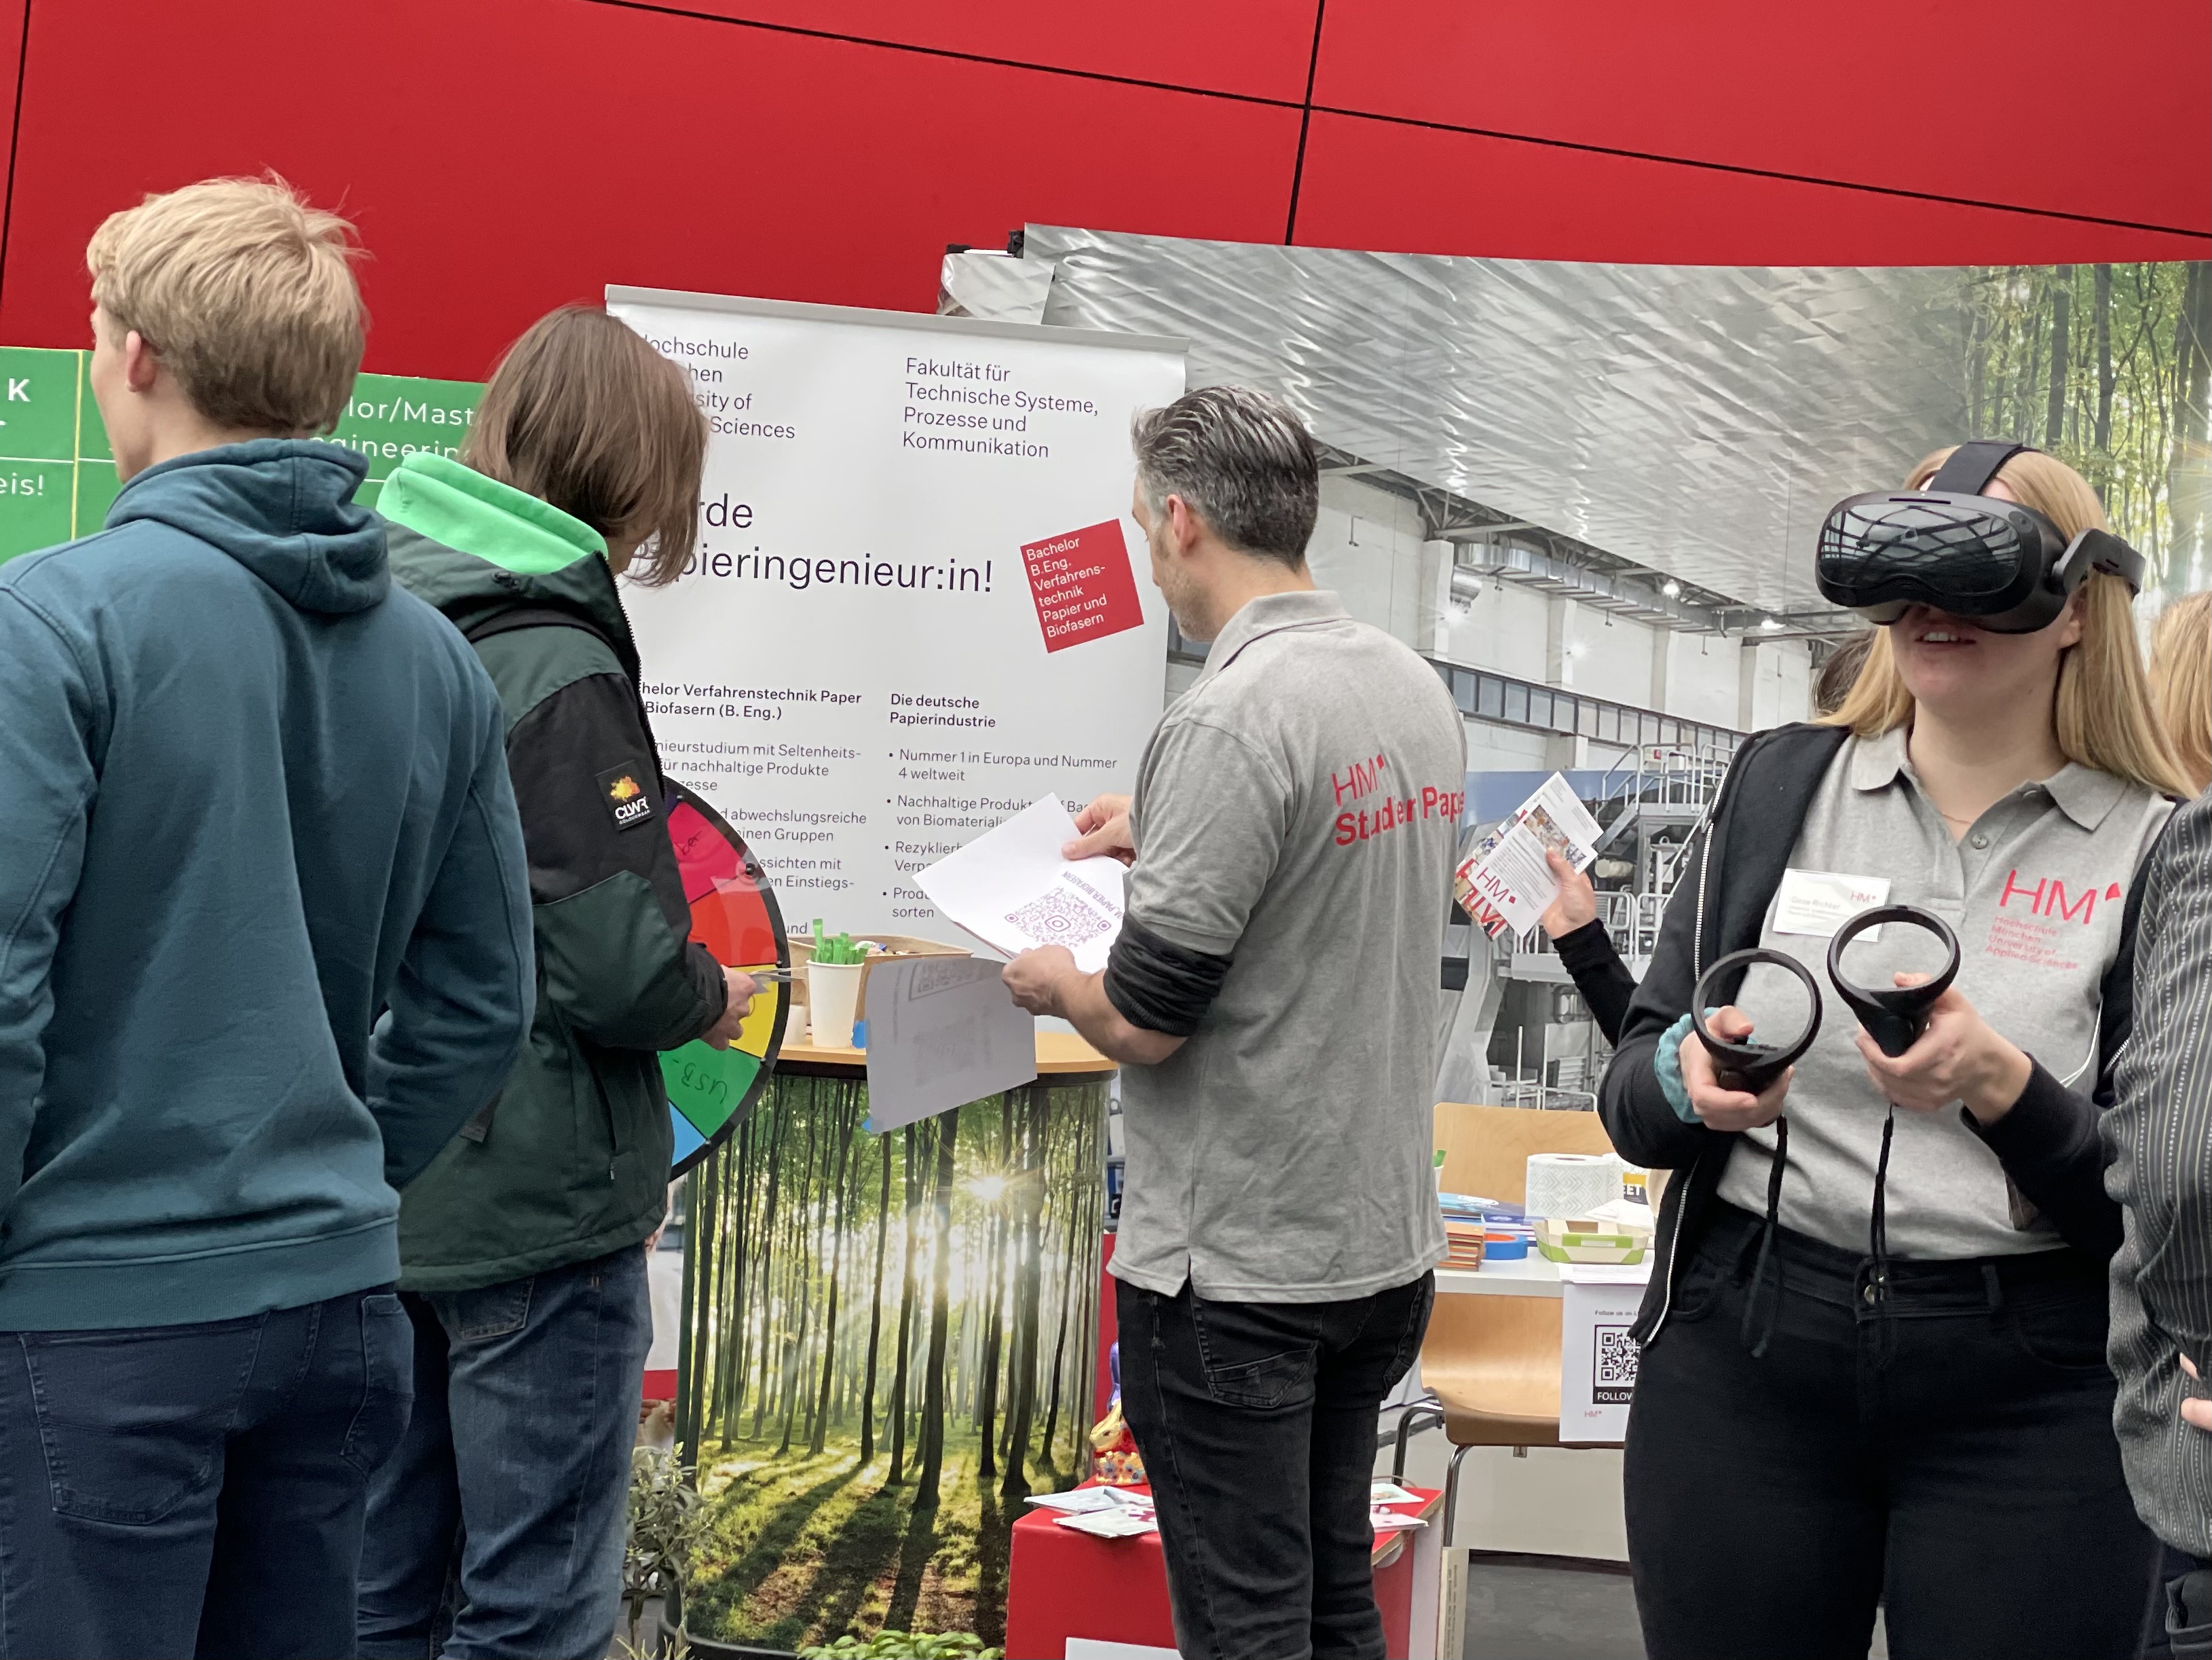 VR-Brille im Einsatz auf dem Studieninformationstag der HM